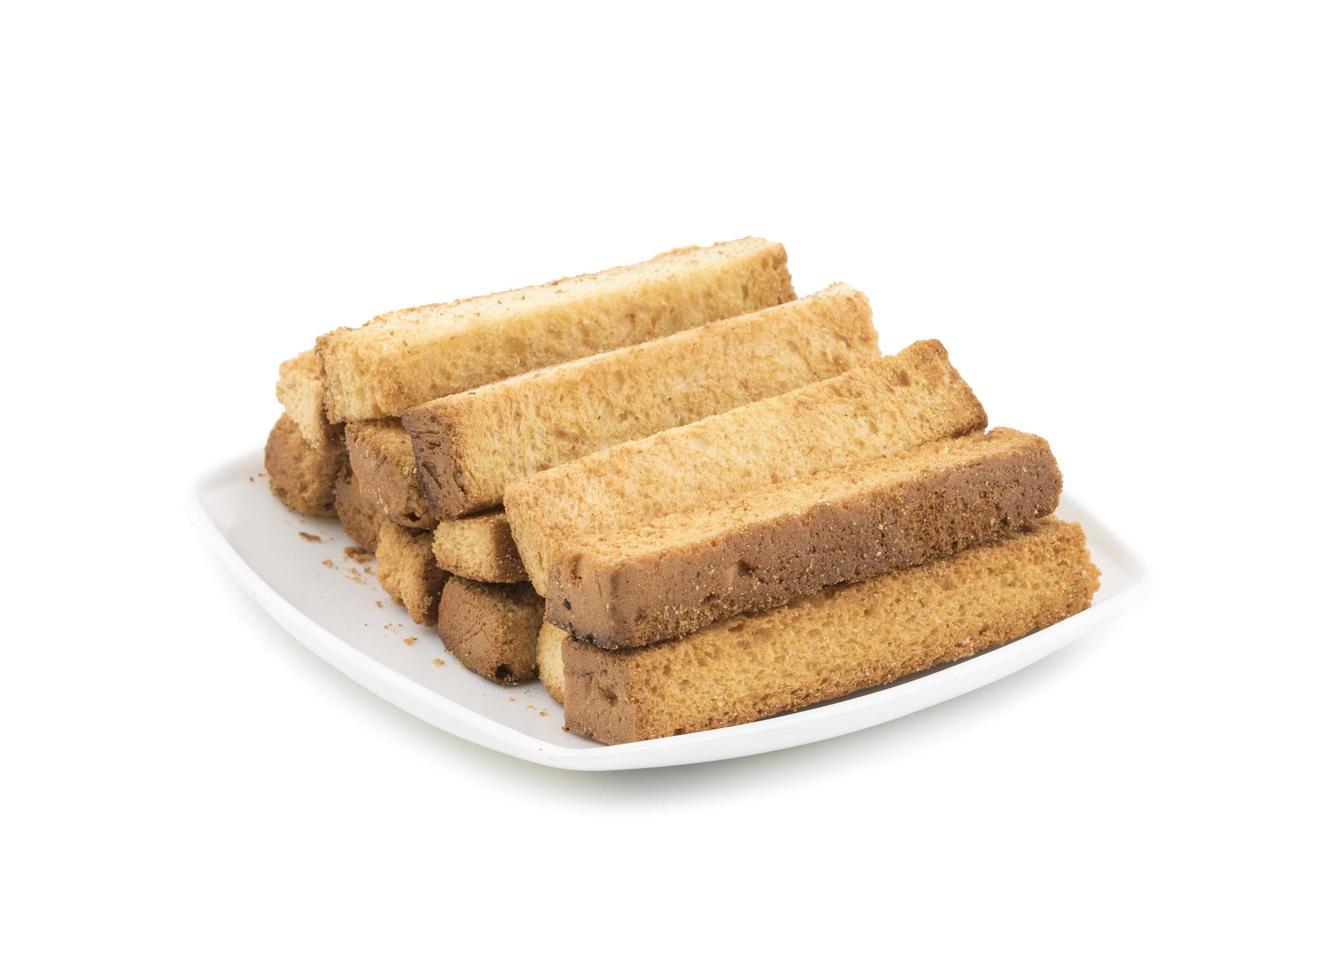 bâtonnets de pain grillé sur une assiette blanche photo